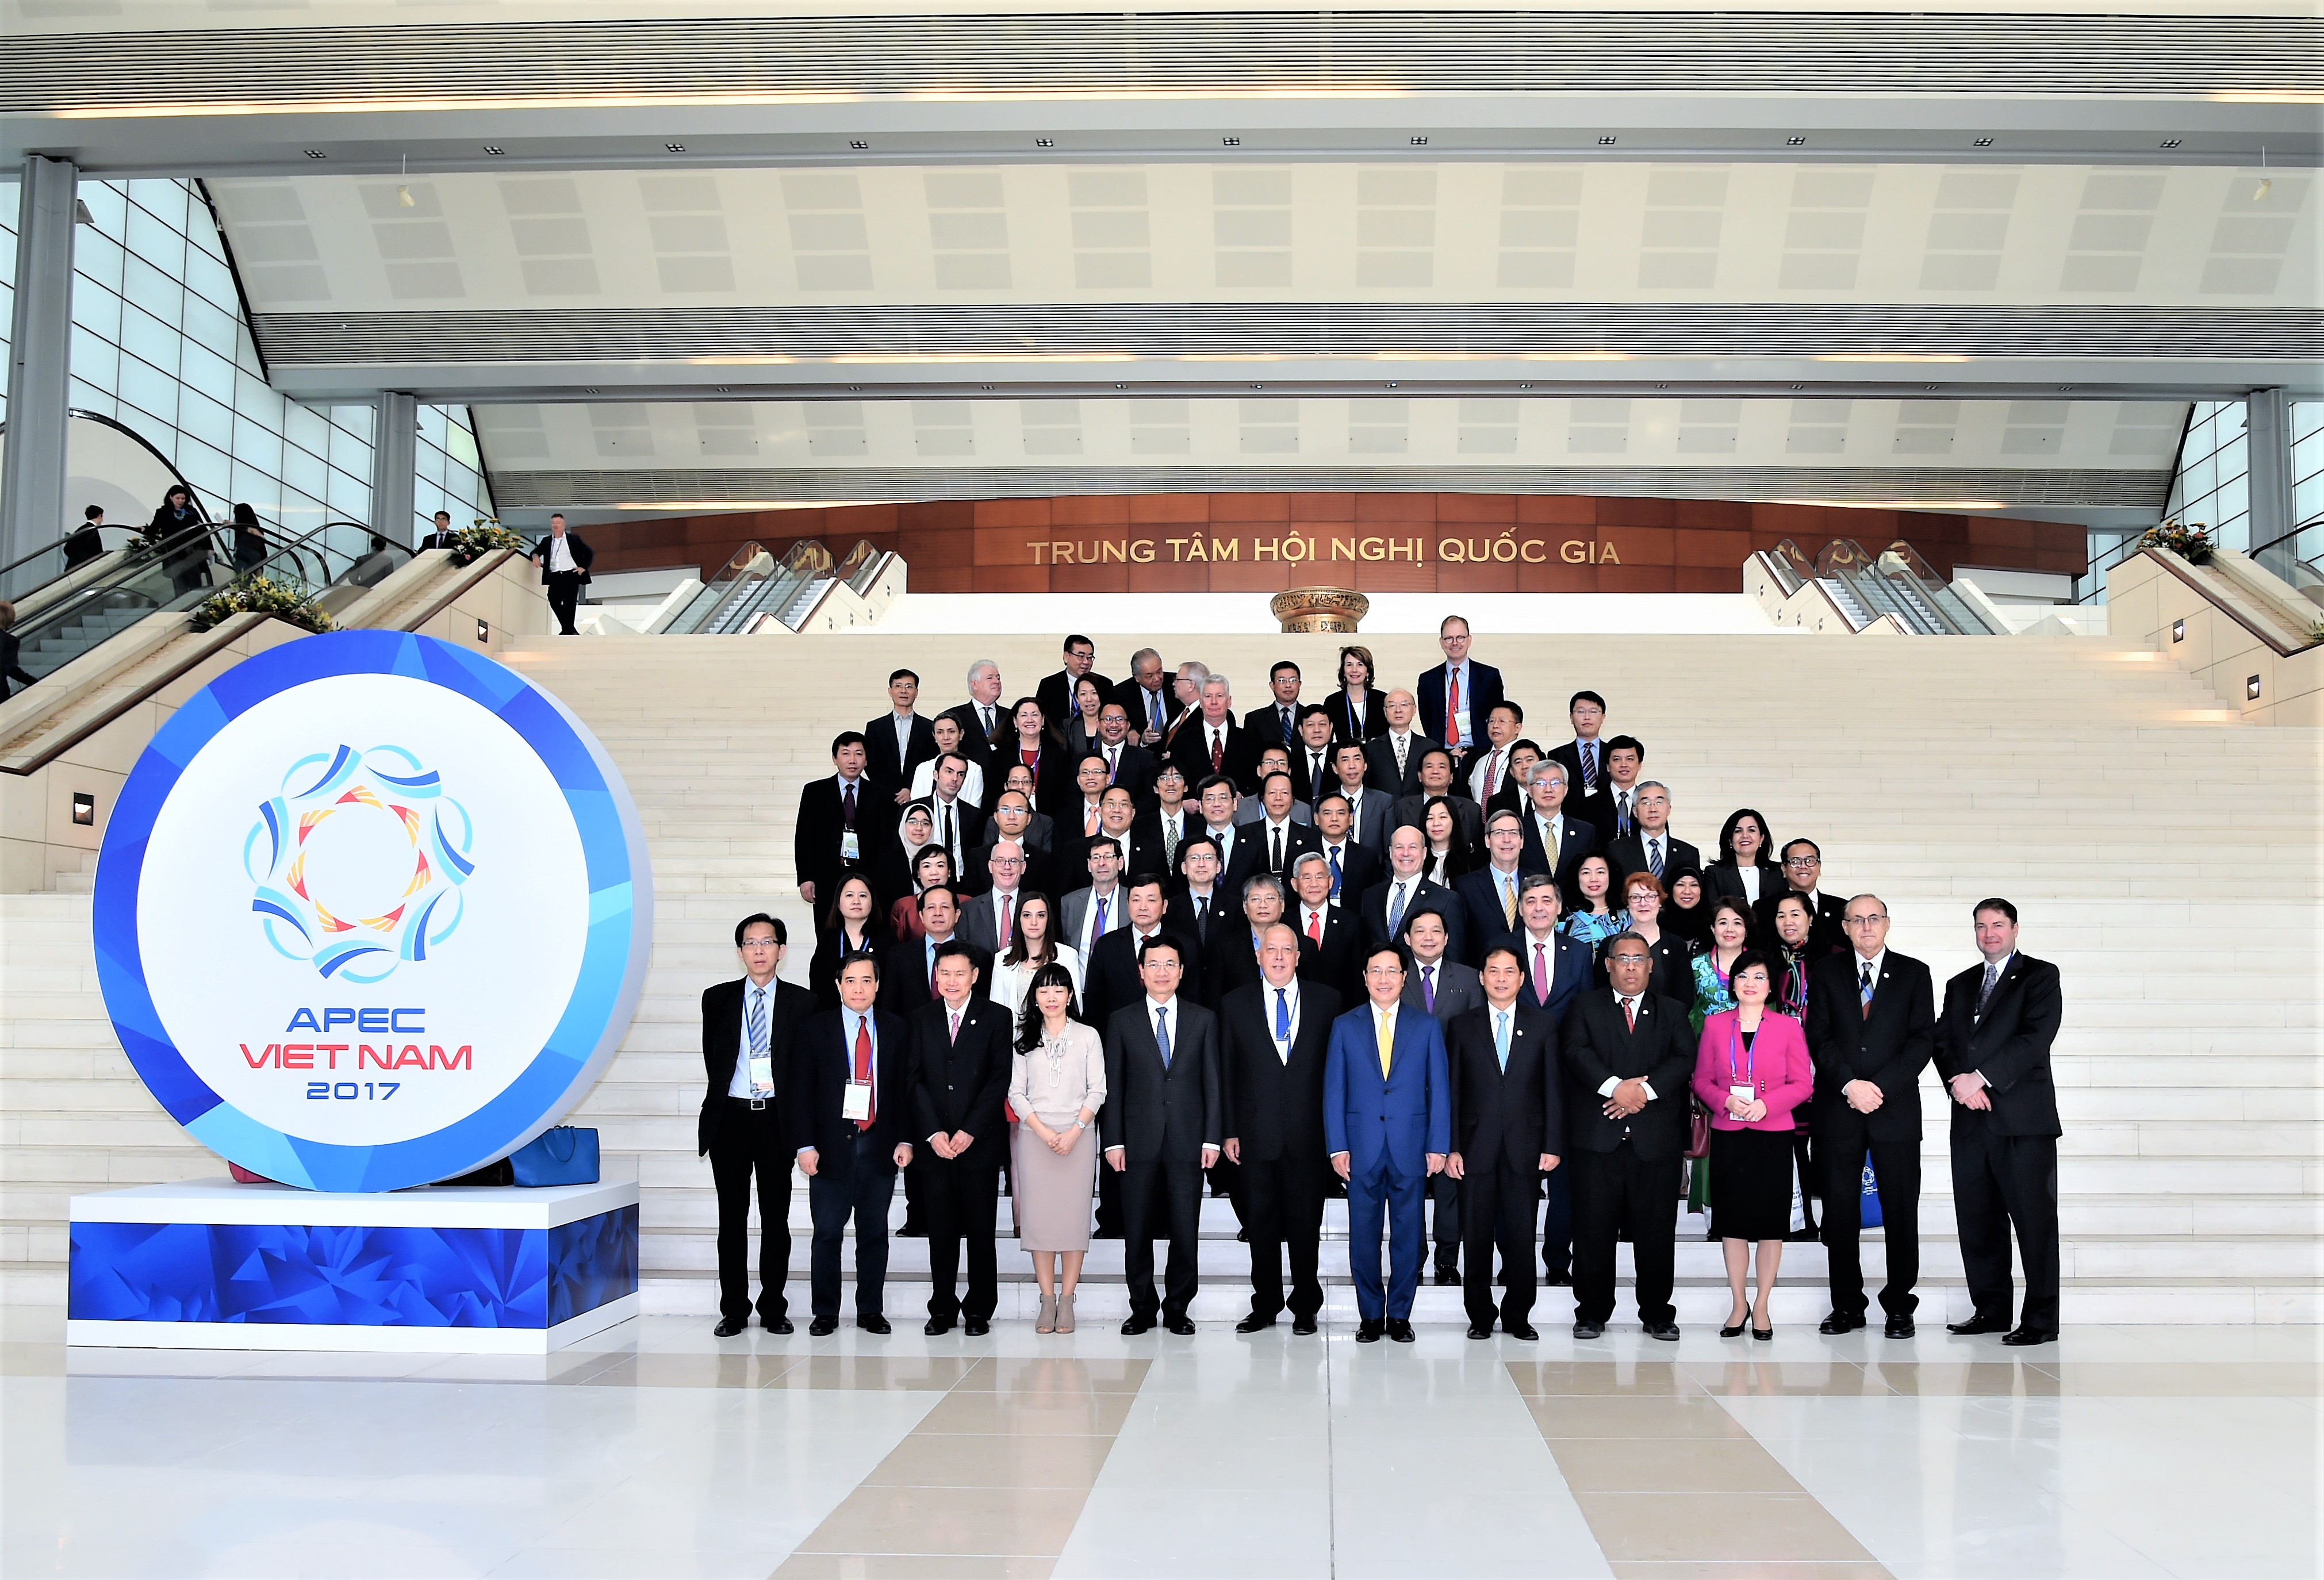 Hội thảo các ưu tiên của Năm APEC 2017, tháng 12/2016 (Ảnh: apec2017.vn)